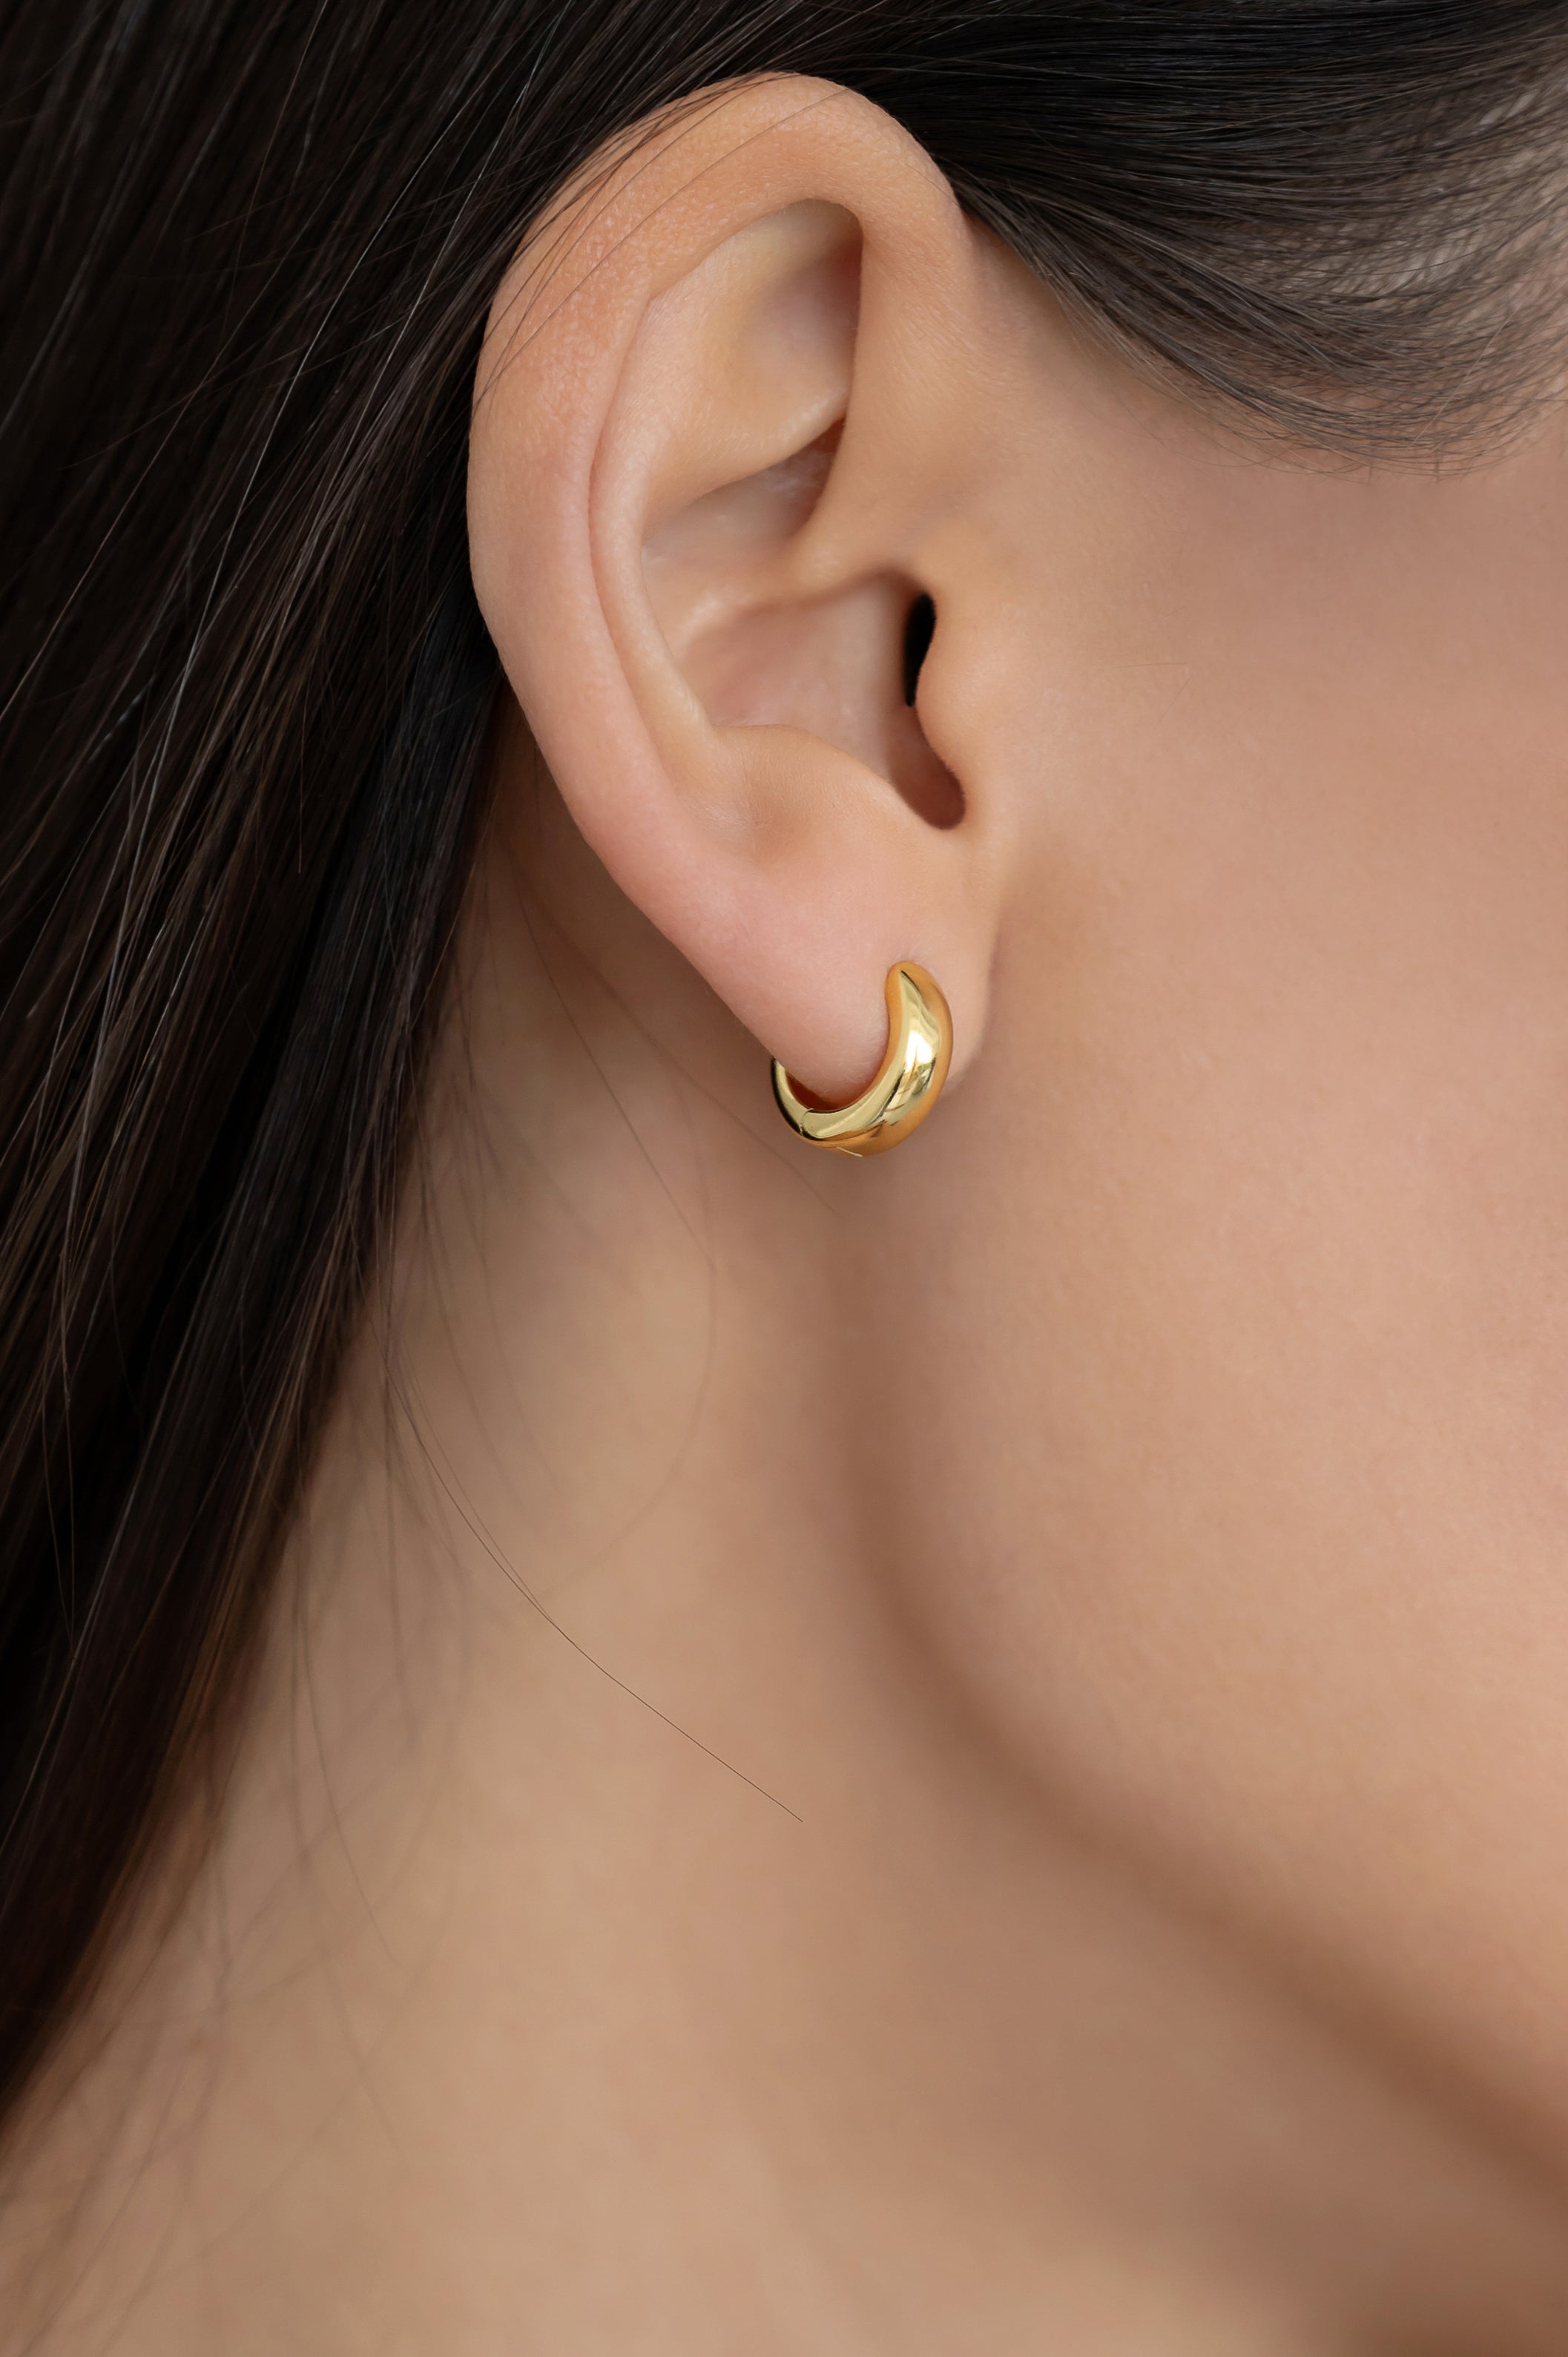 Gold-plated earrings LITTLE HOOP 925 sidabras